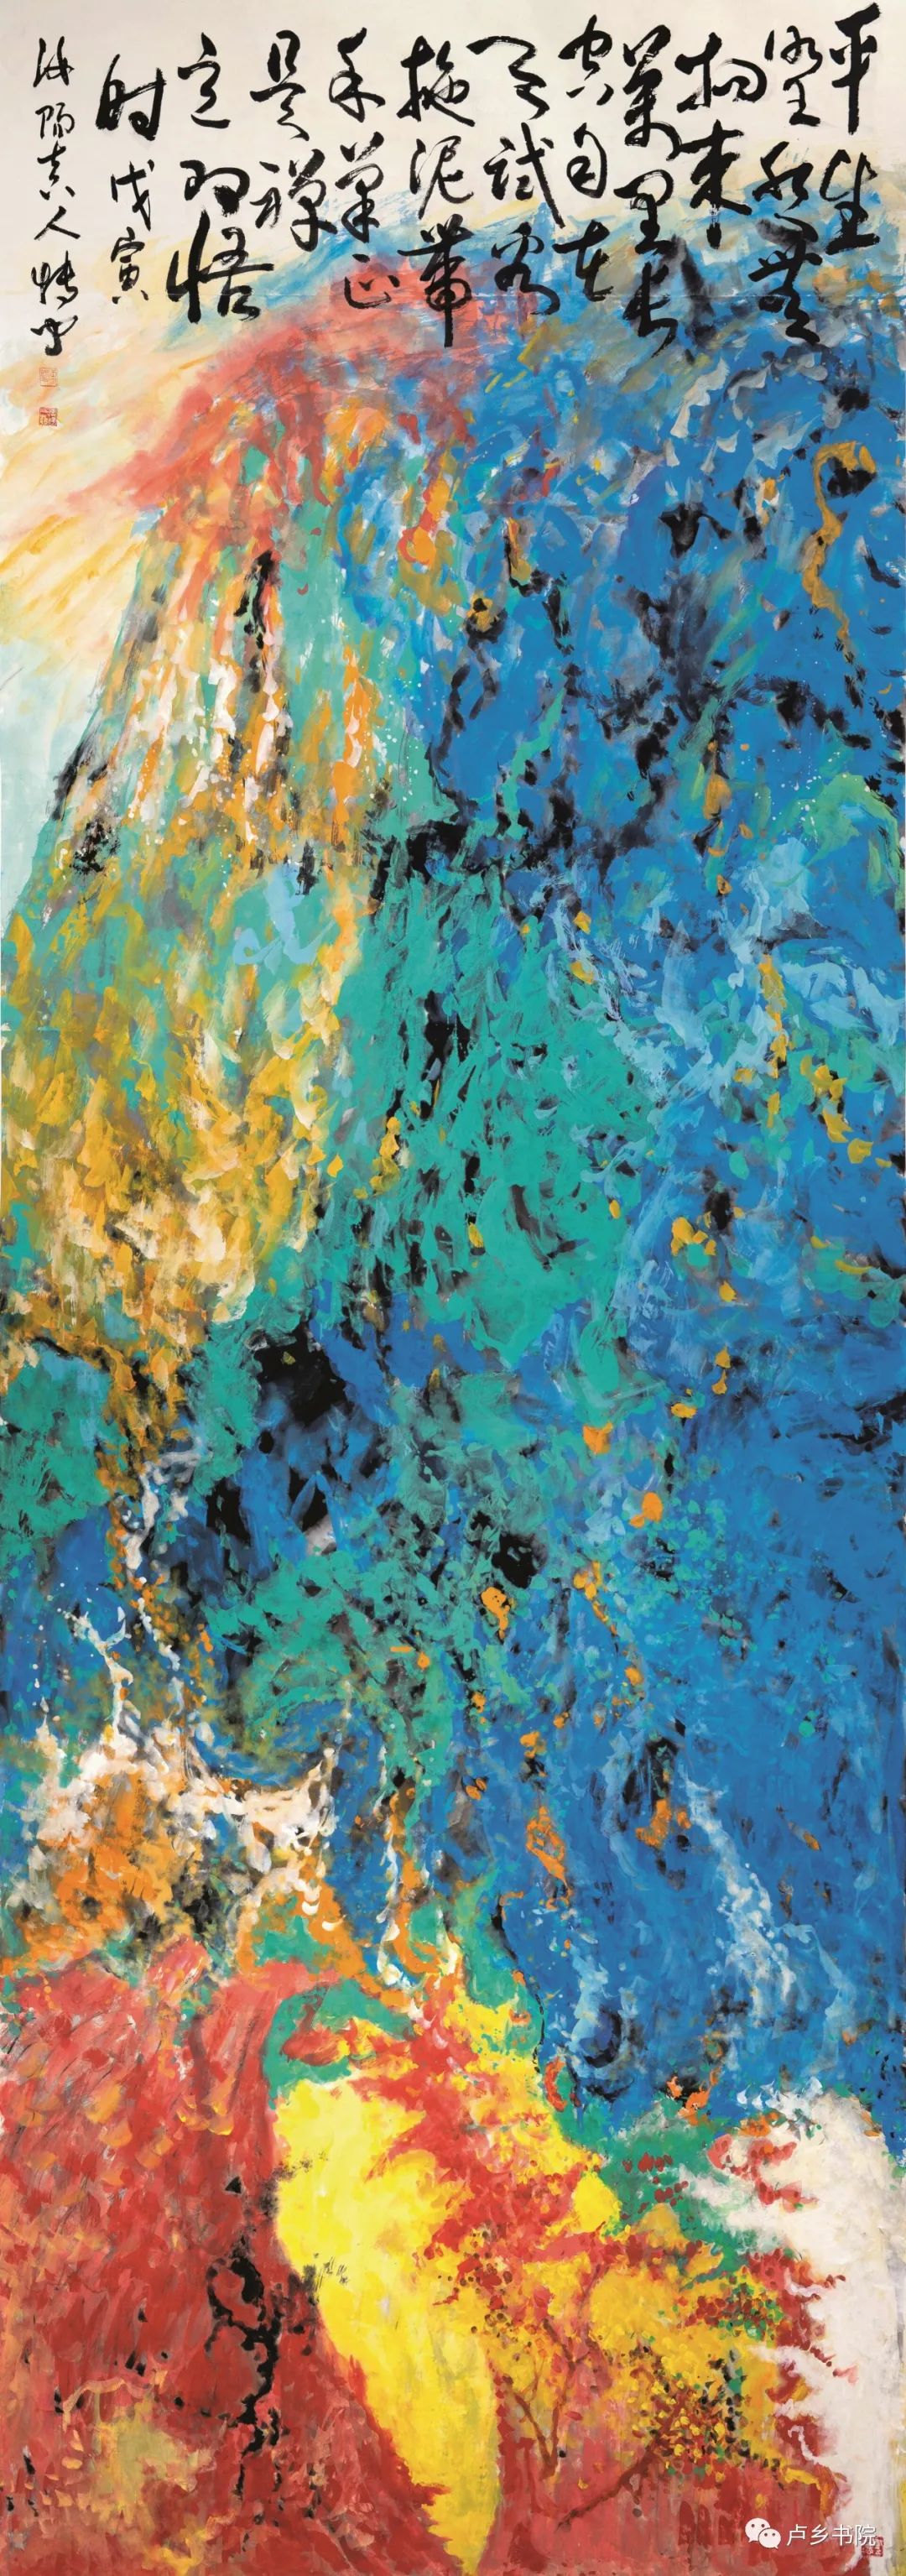 磅礴气象 斑斓山水——走进著名画家孙博文“多彩”的水墨世界